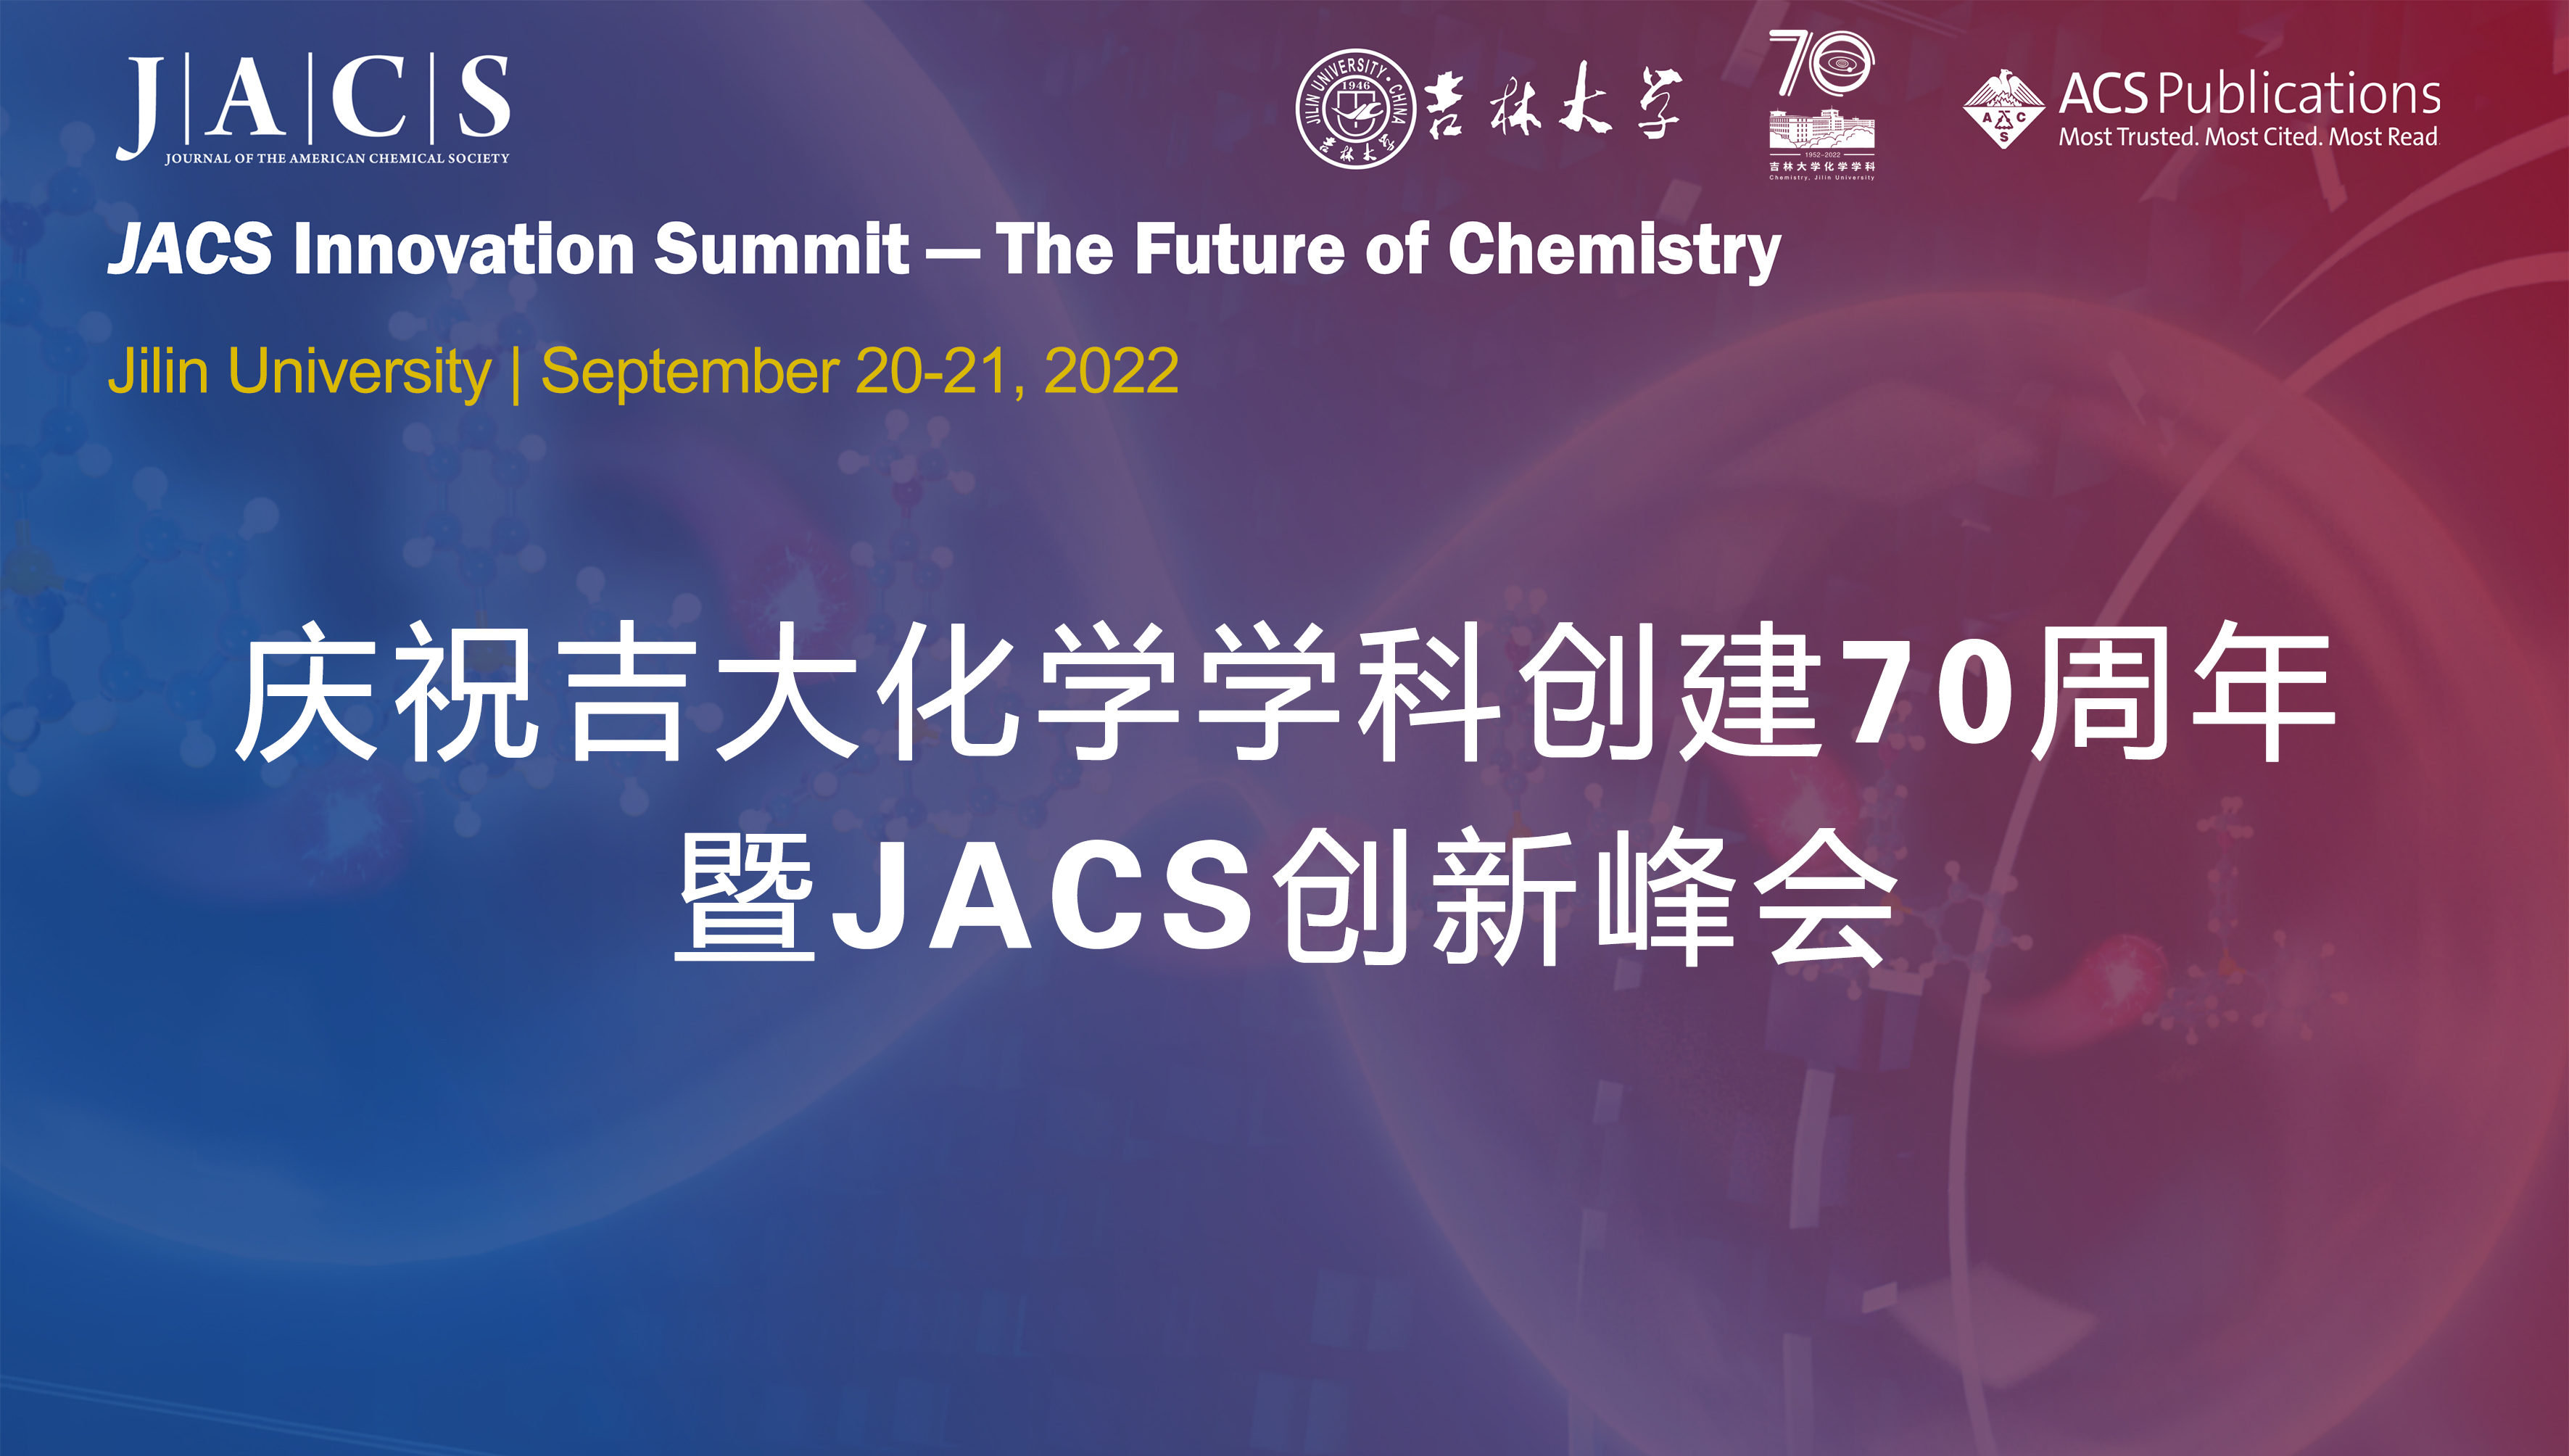 庆祝吉大化学学科创建70周年暨JACS创新峰会